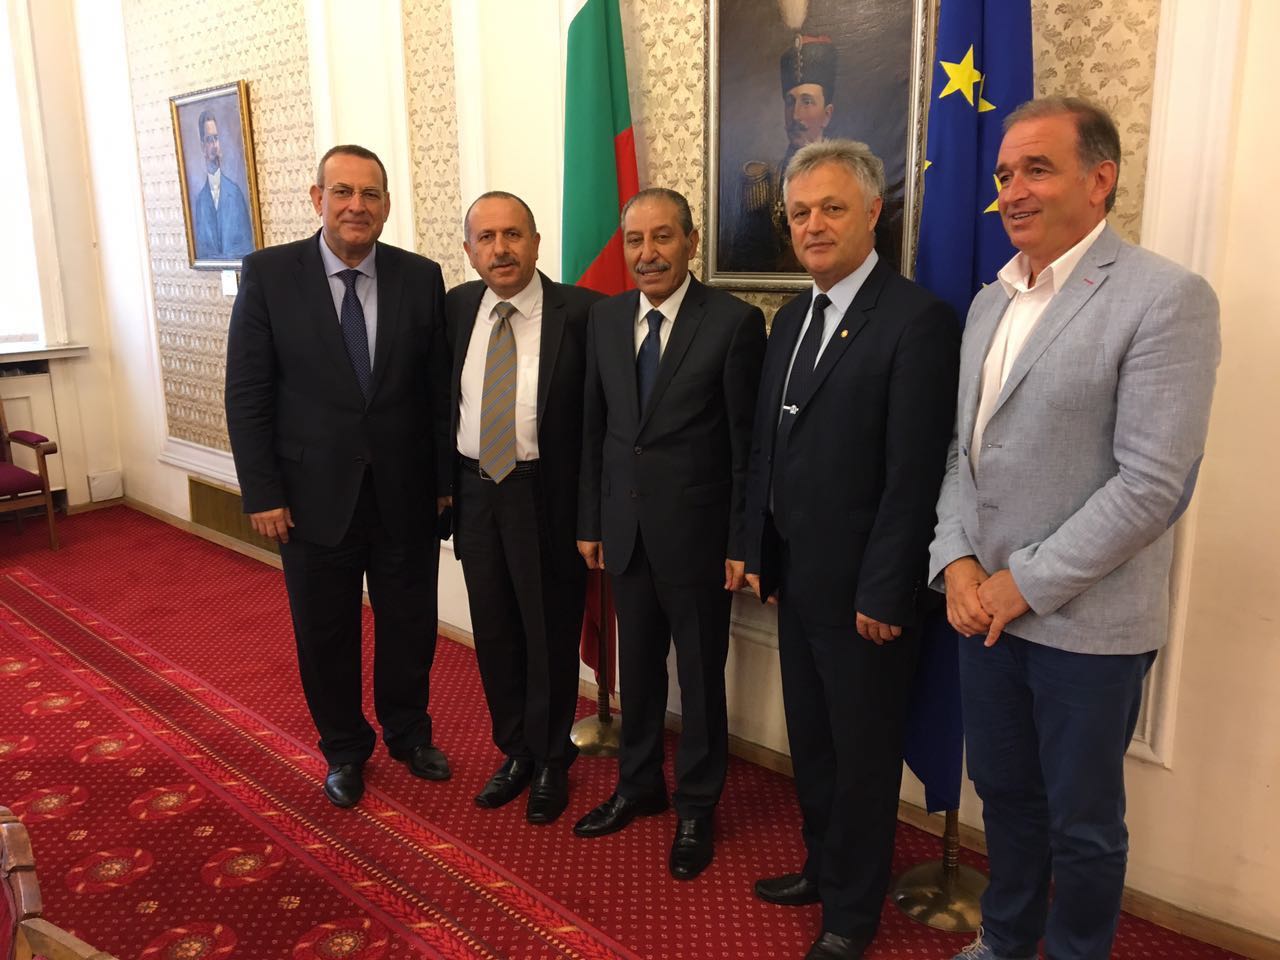 النائب الصقور يزور البرلمان البلغاري لبحث التعاون مع البلدين 